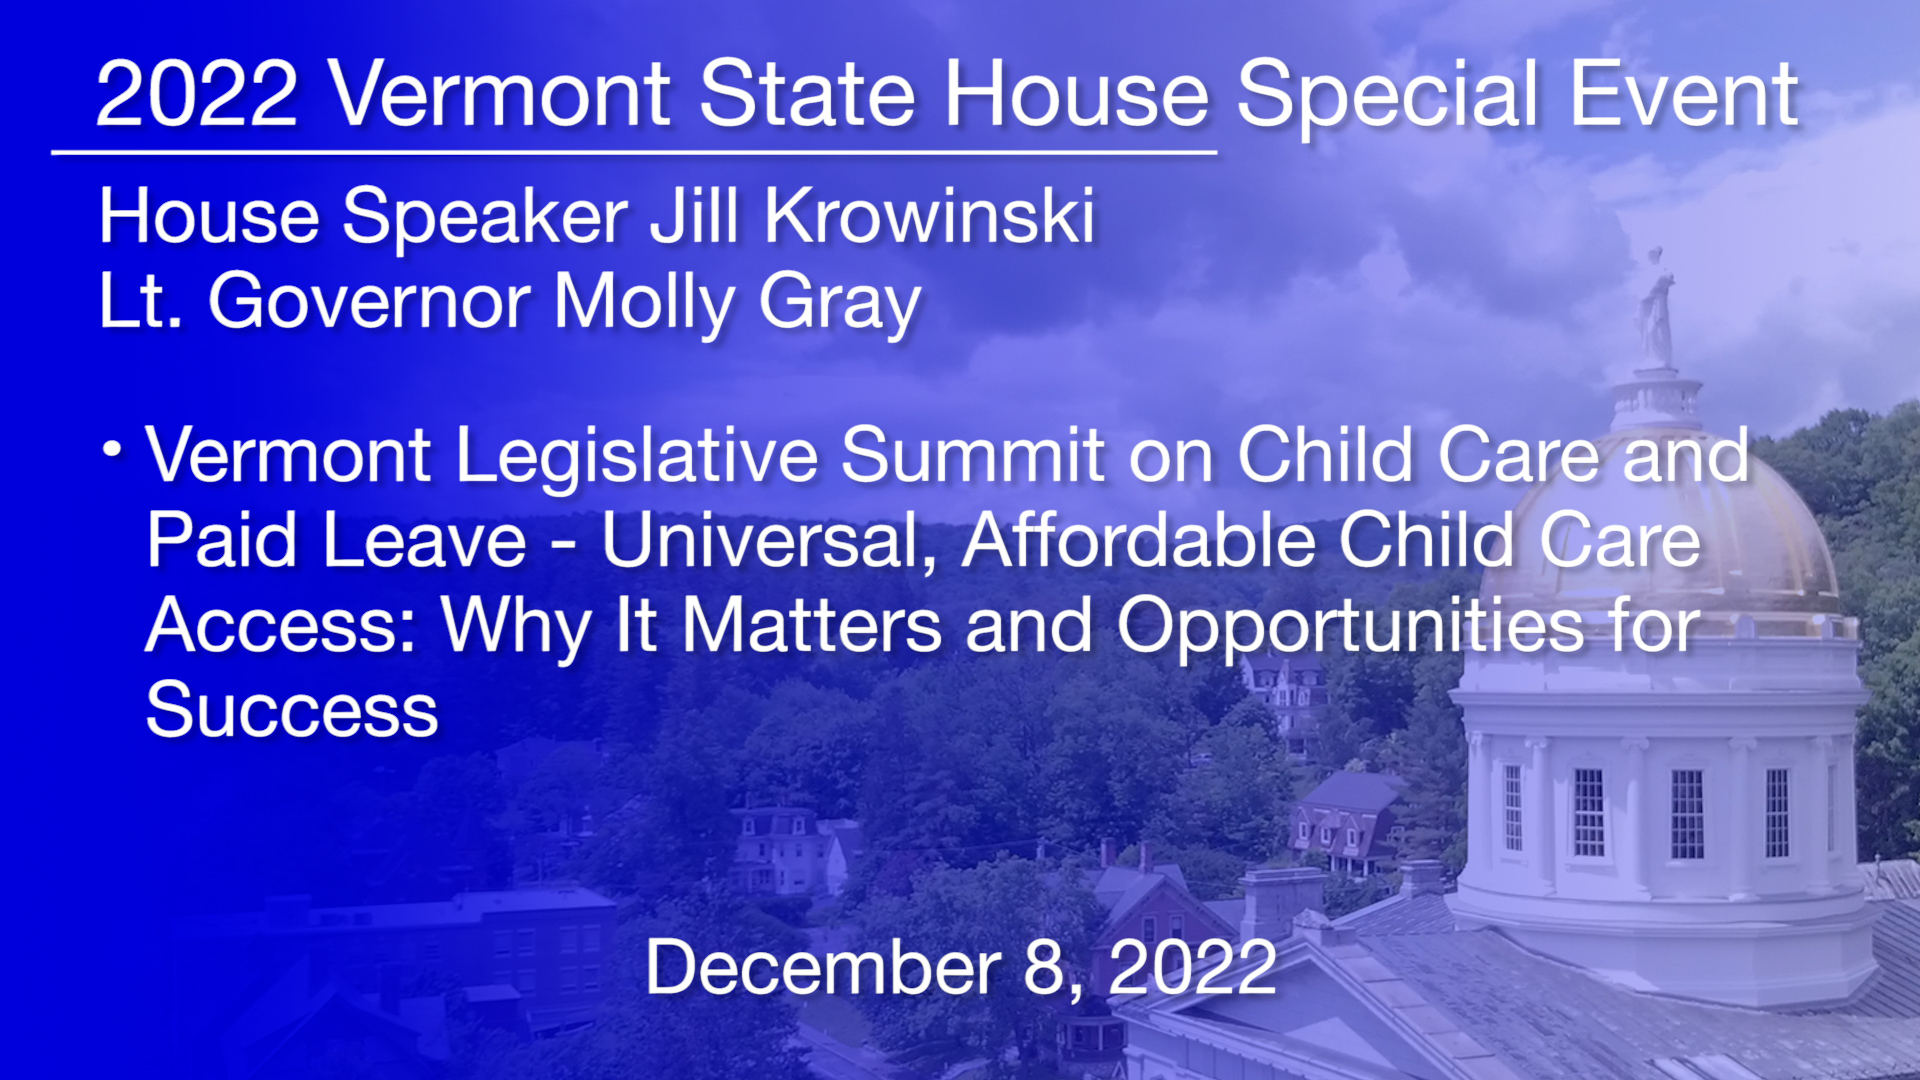 vt-legislative-summit-on-child-care-and-paid-leave-universal